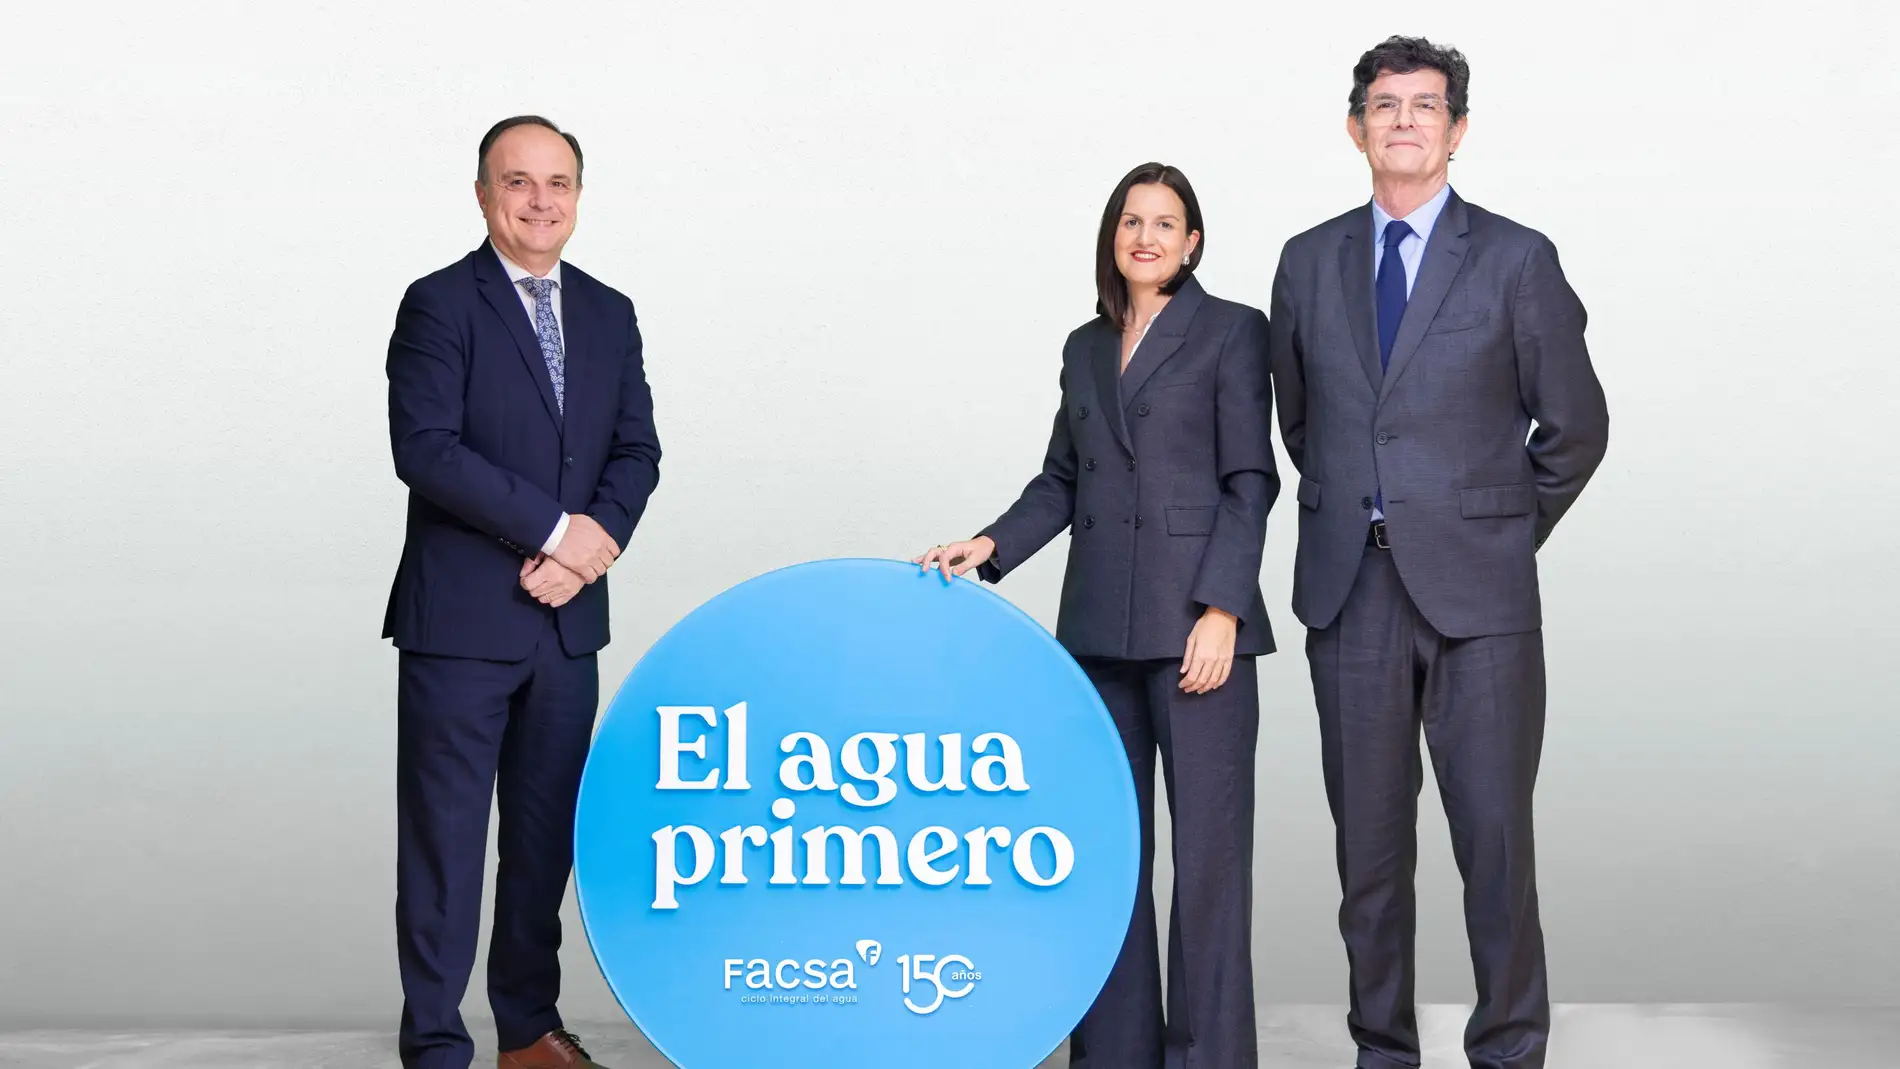 Facsa celebra su 150 aniversario en Castellón concienciando sobre la importancia del agua 